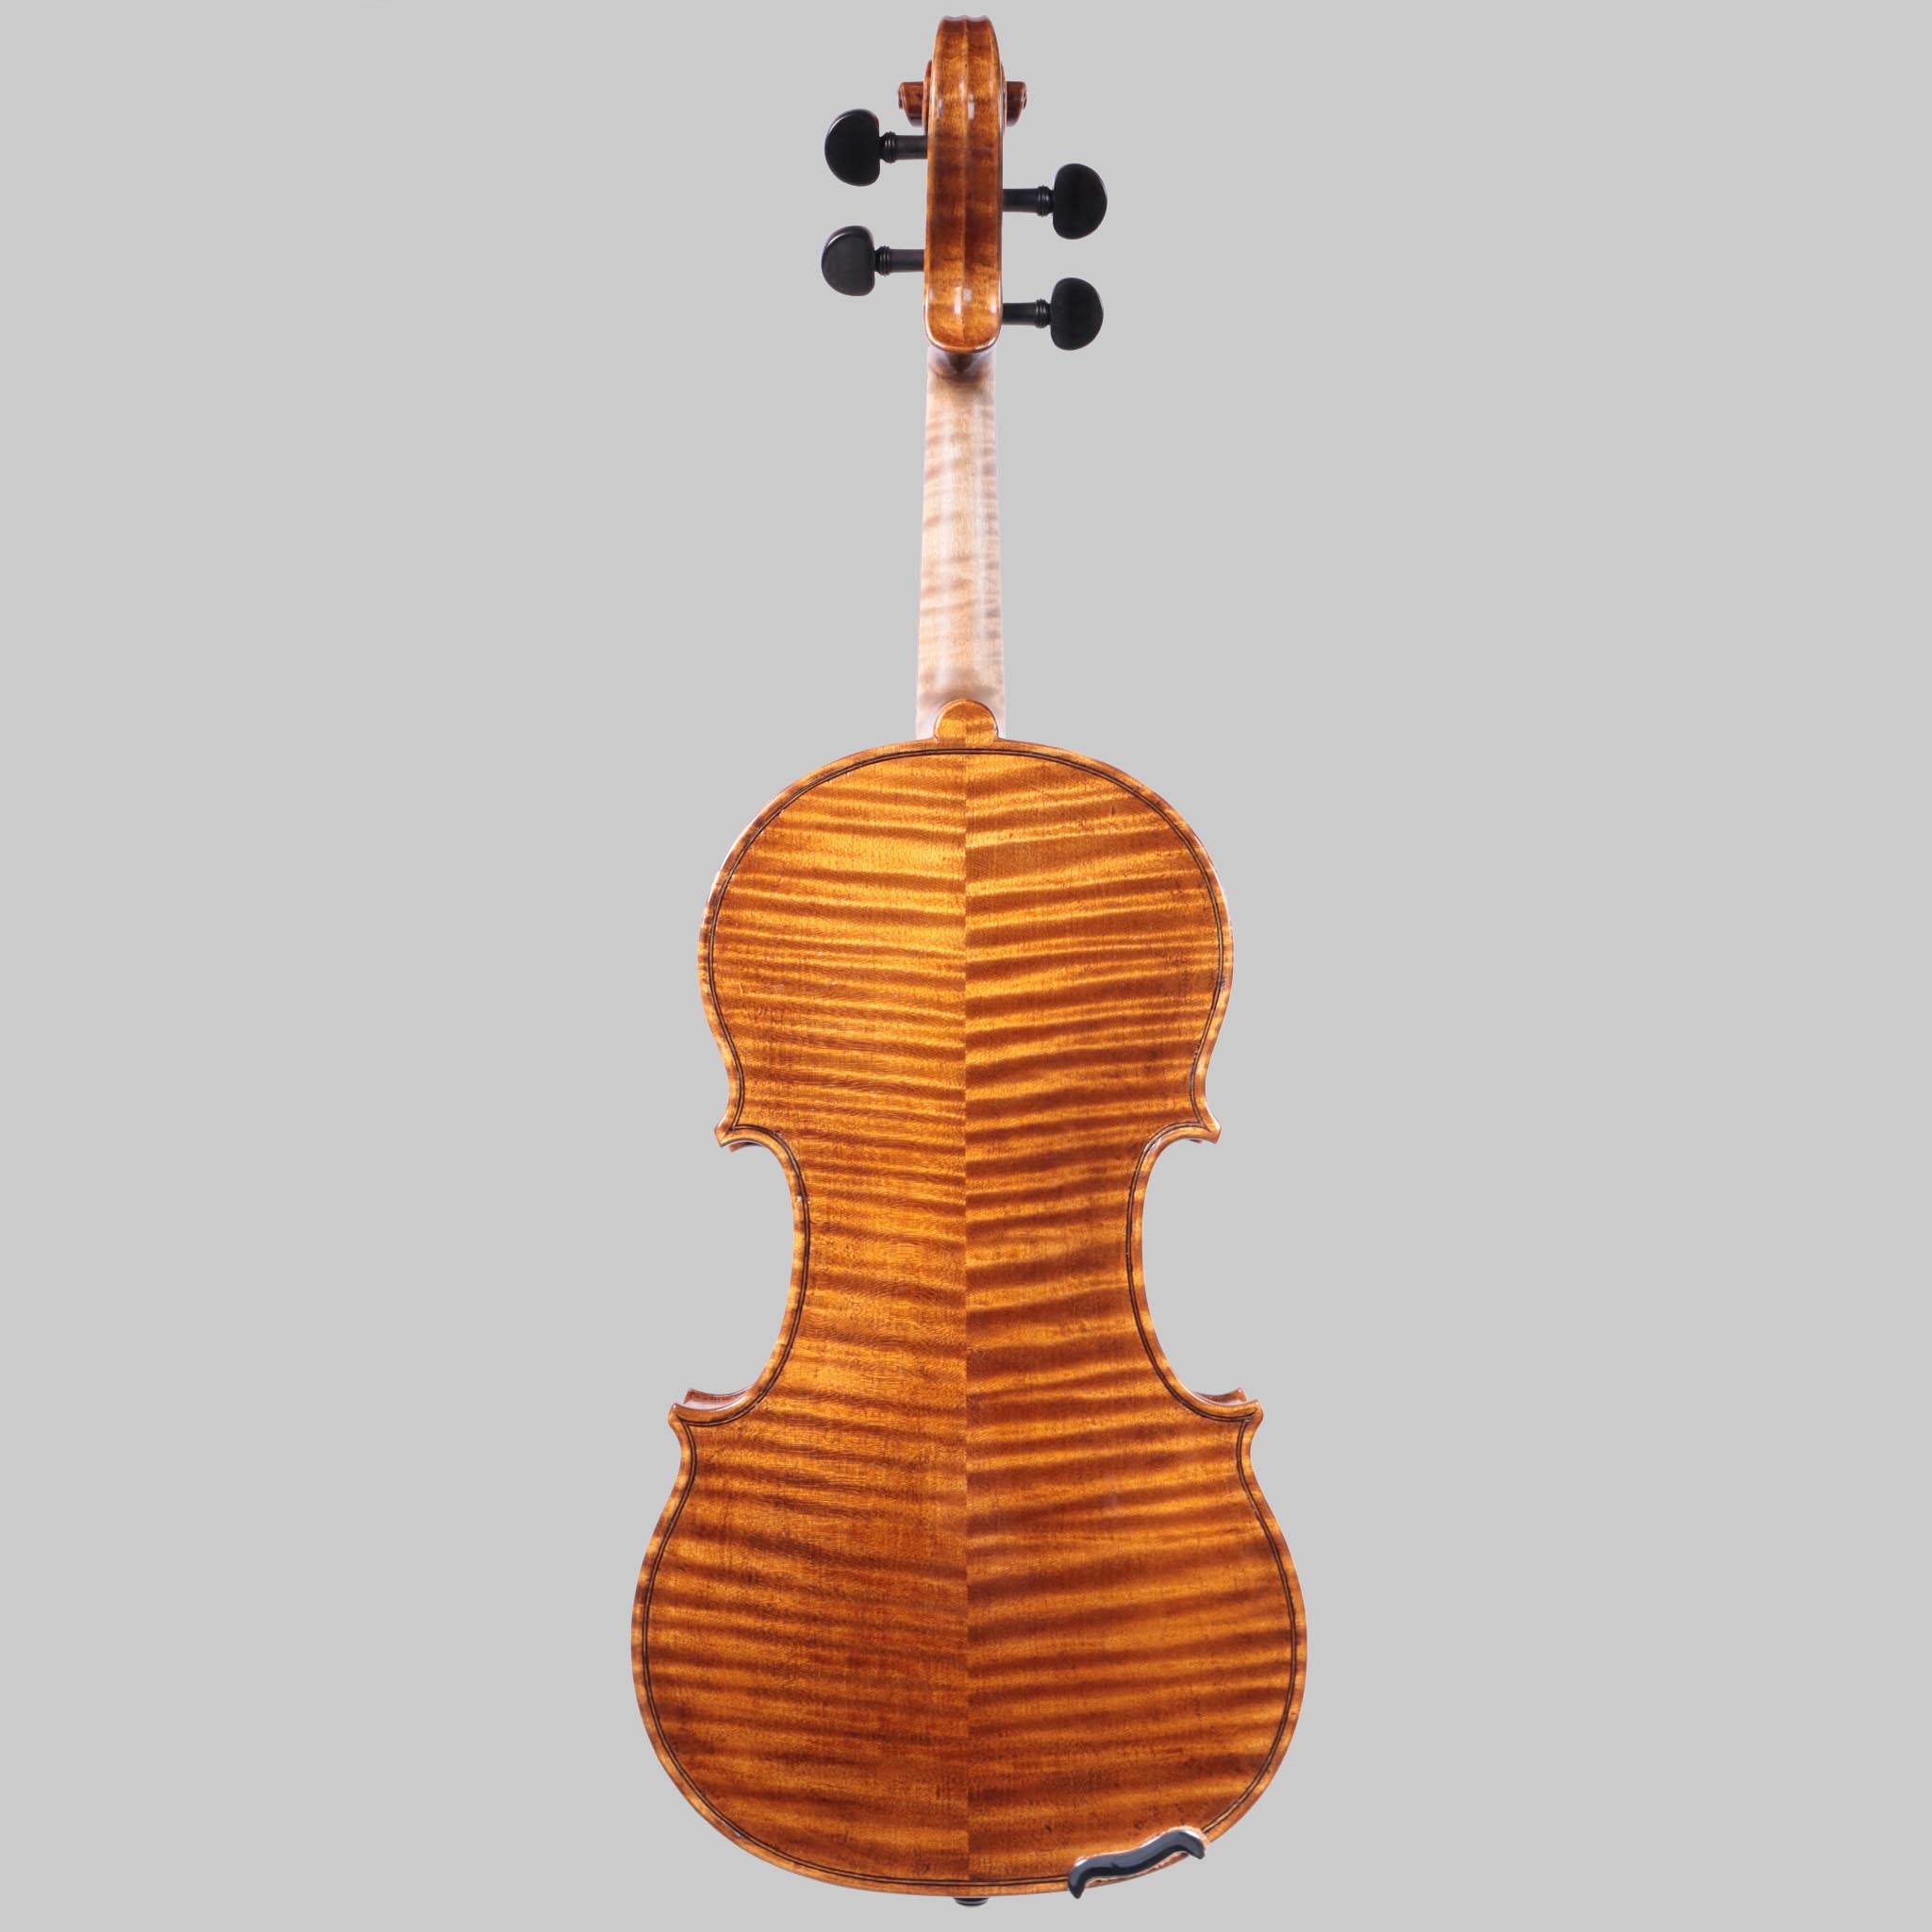 Ruth Obermayer, Granada Spain, 2021 Violin